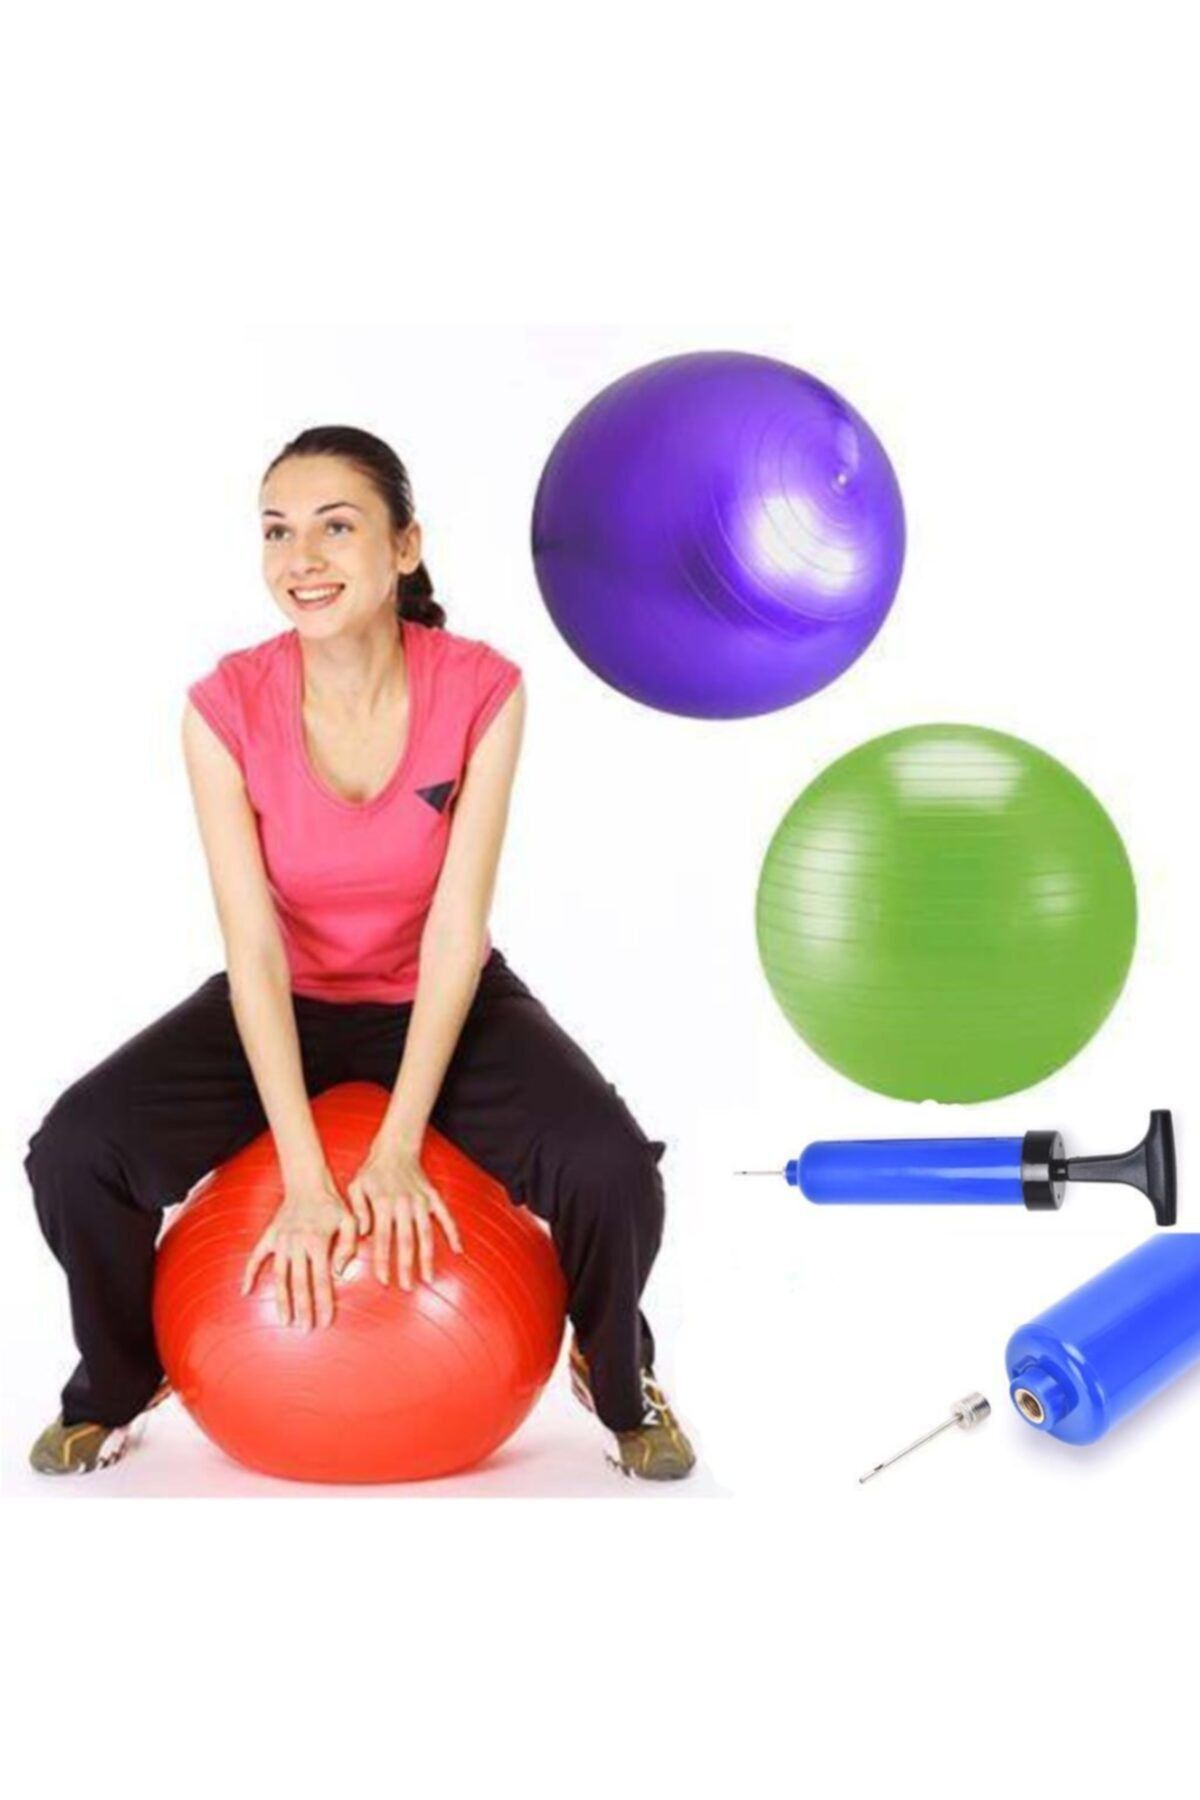 Çokuygunuz 2 Adet 65 cm Pilates Topu Egzersiz Kondisyon Spor Pompa